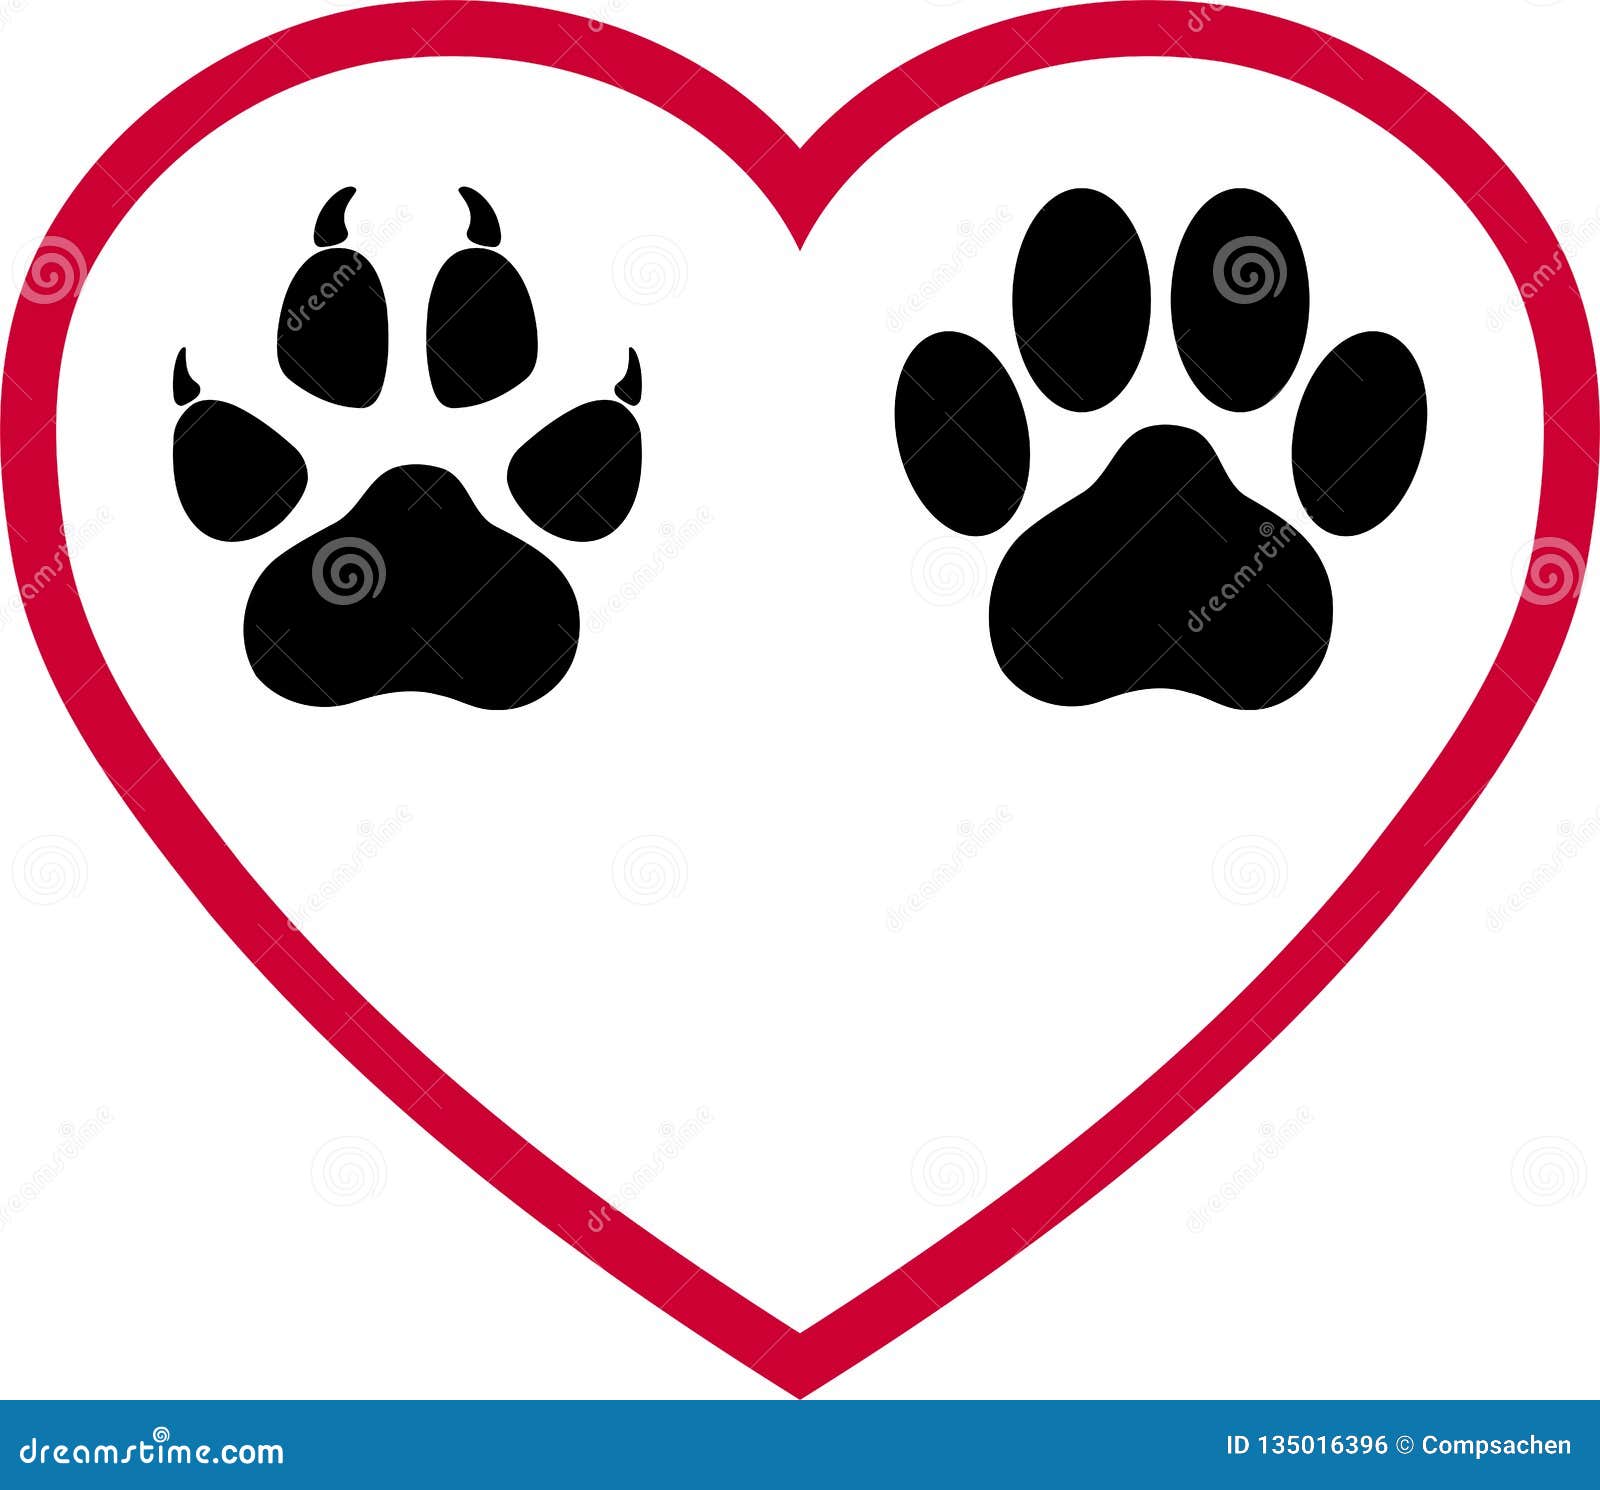 Logo De Coeur De Patte De Chien Et De Cat Paw De Chiens Et De Chats Logo Animal Illustration De Vecteur Illustration Du Reperes Fond